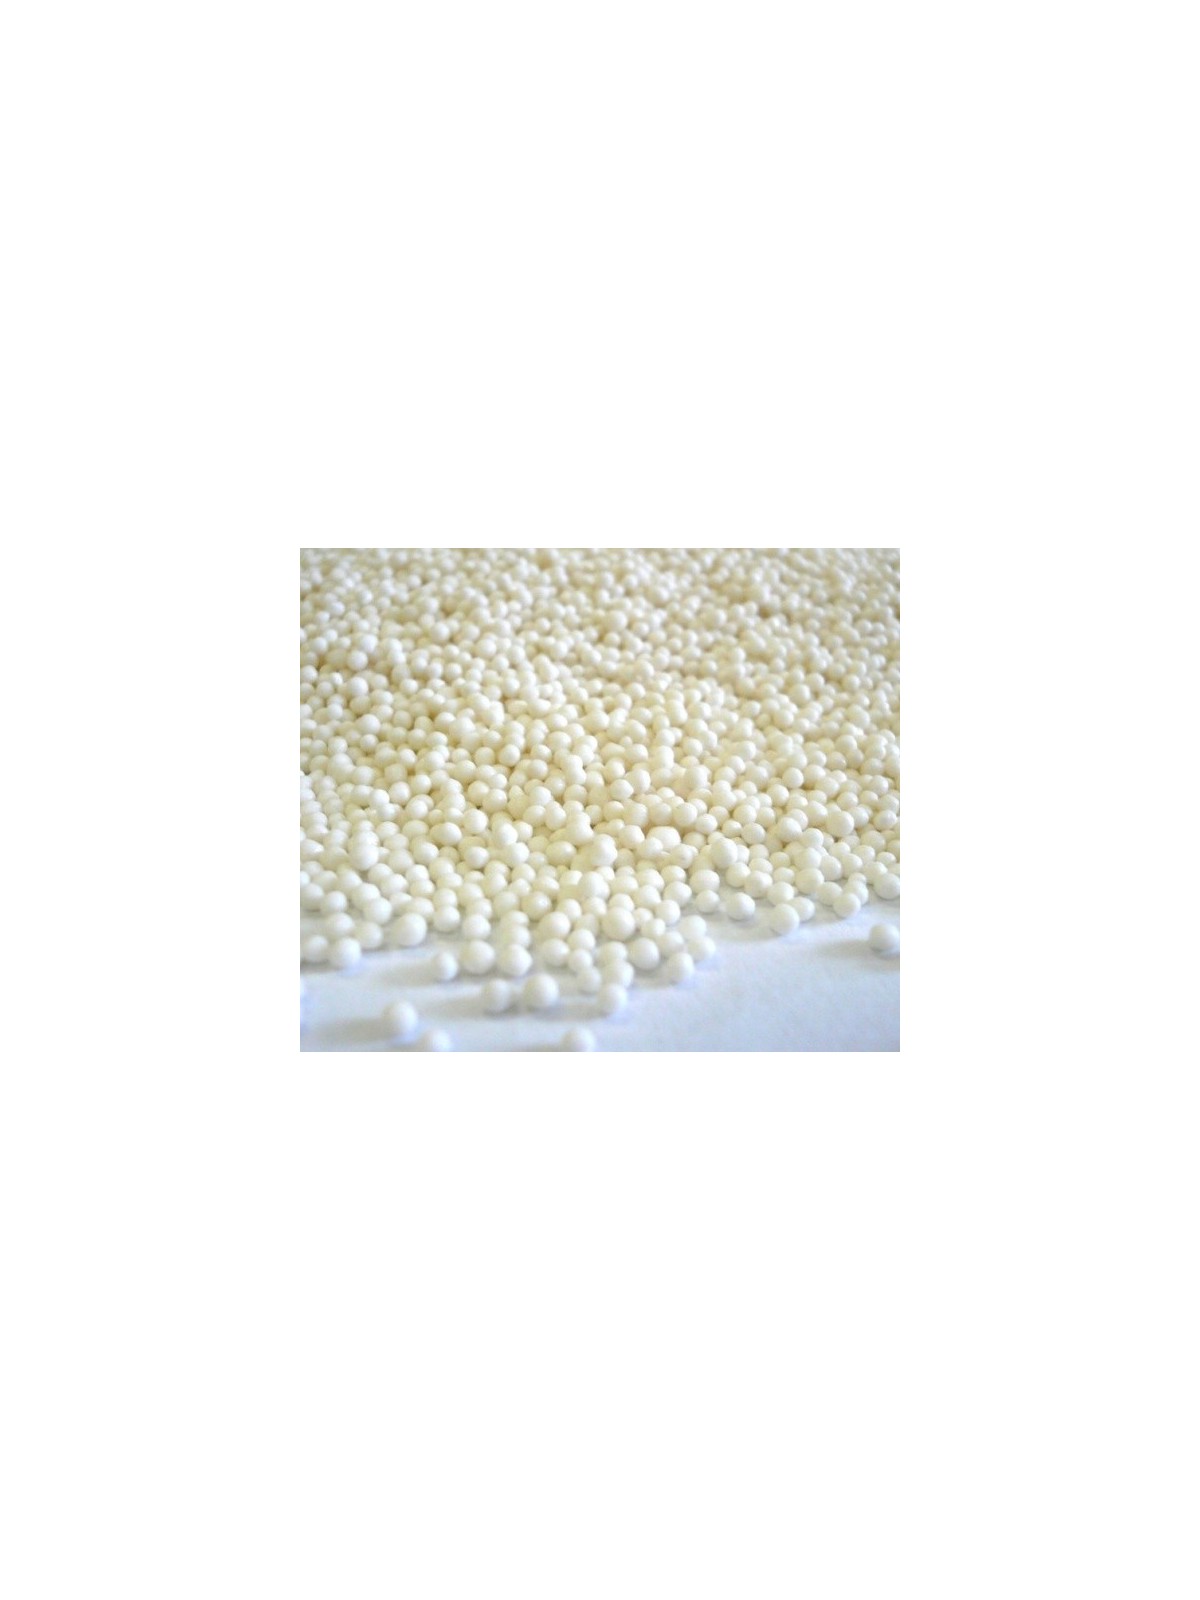 Sugar nonpareils white - 100g